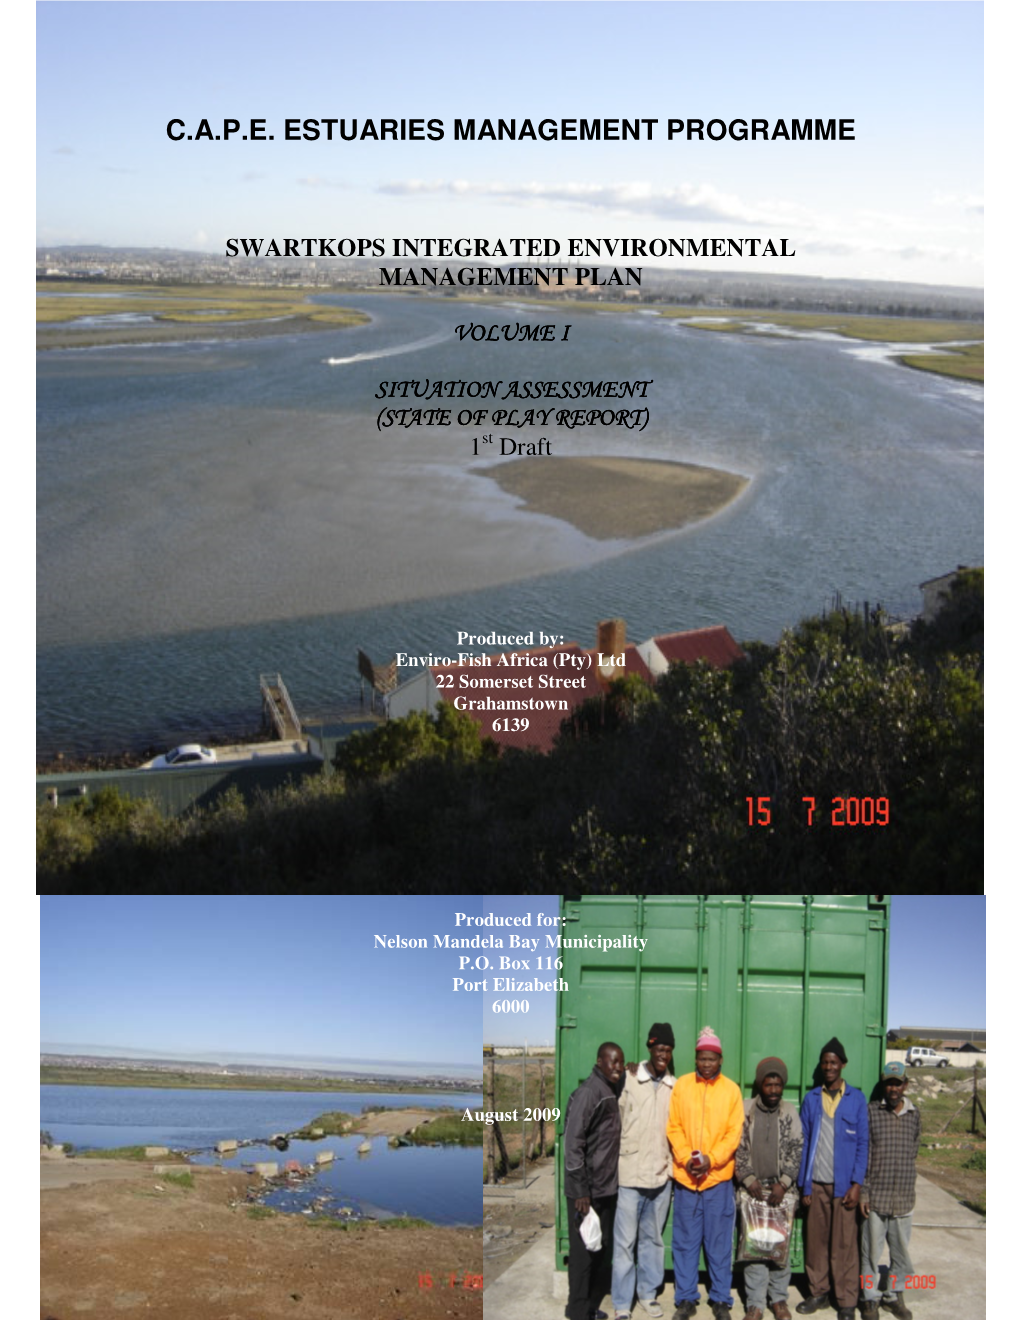 C.A.P.E. Estuaries Management Programme; Swartkops Estuary Management Plan: Situation Assessment